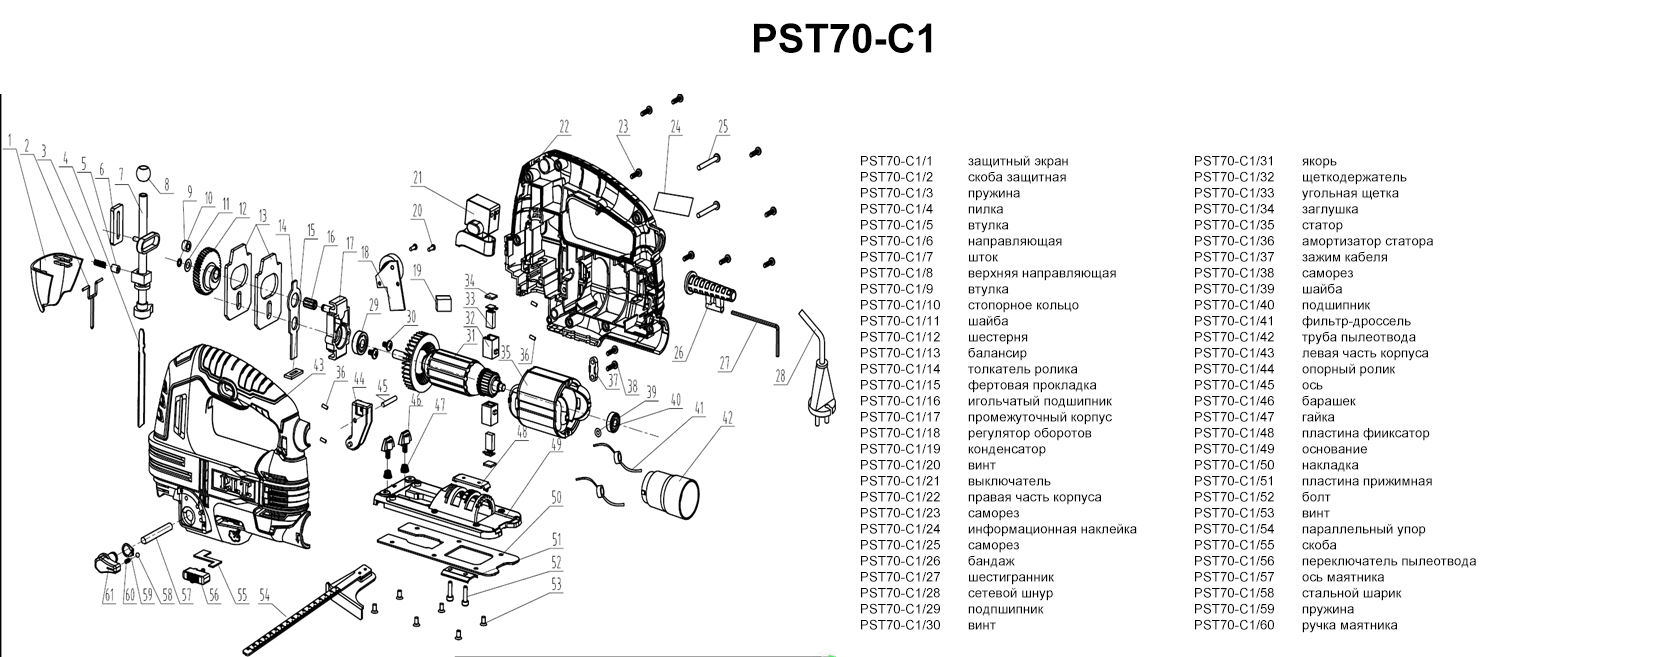 Запчасти, схема и деталировка P.I.T. PST70-C1  МАСТЕР